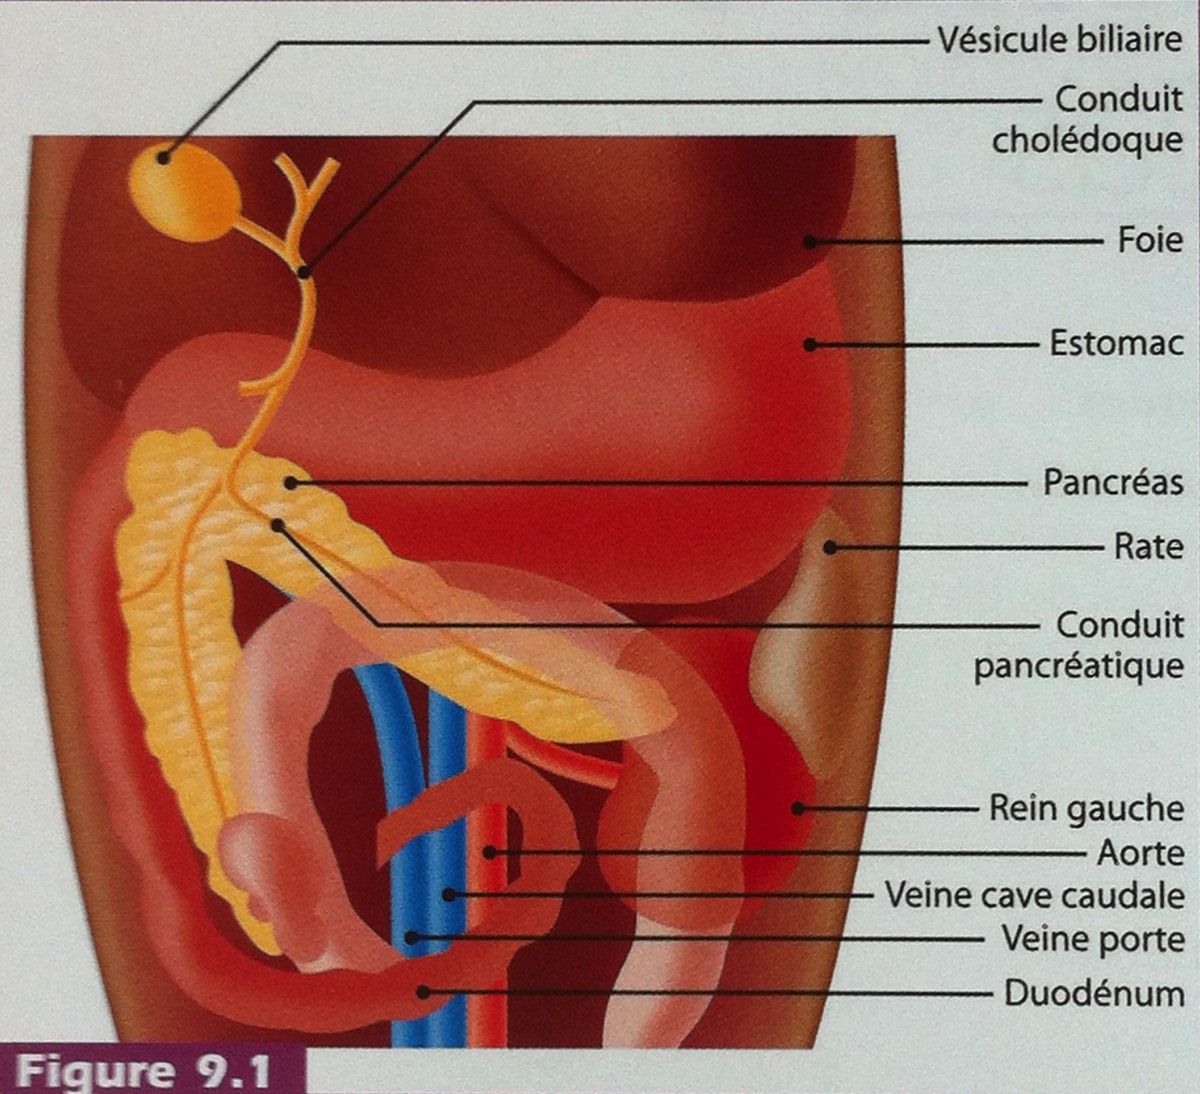 Anatomie échographique du pancréas | Pense-bête